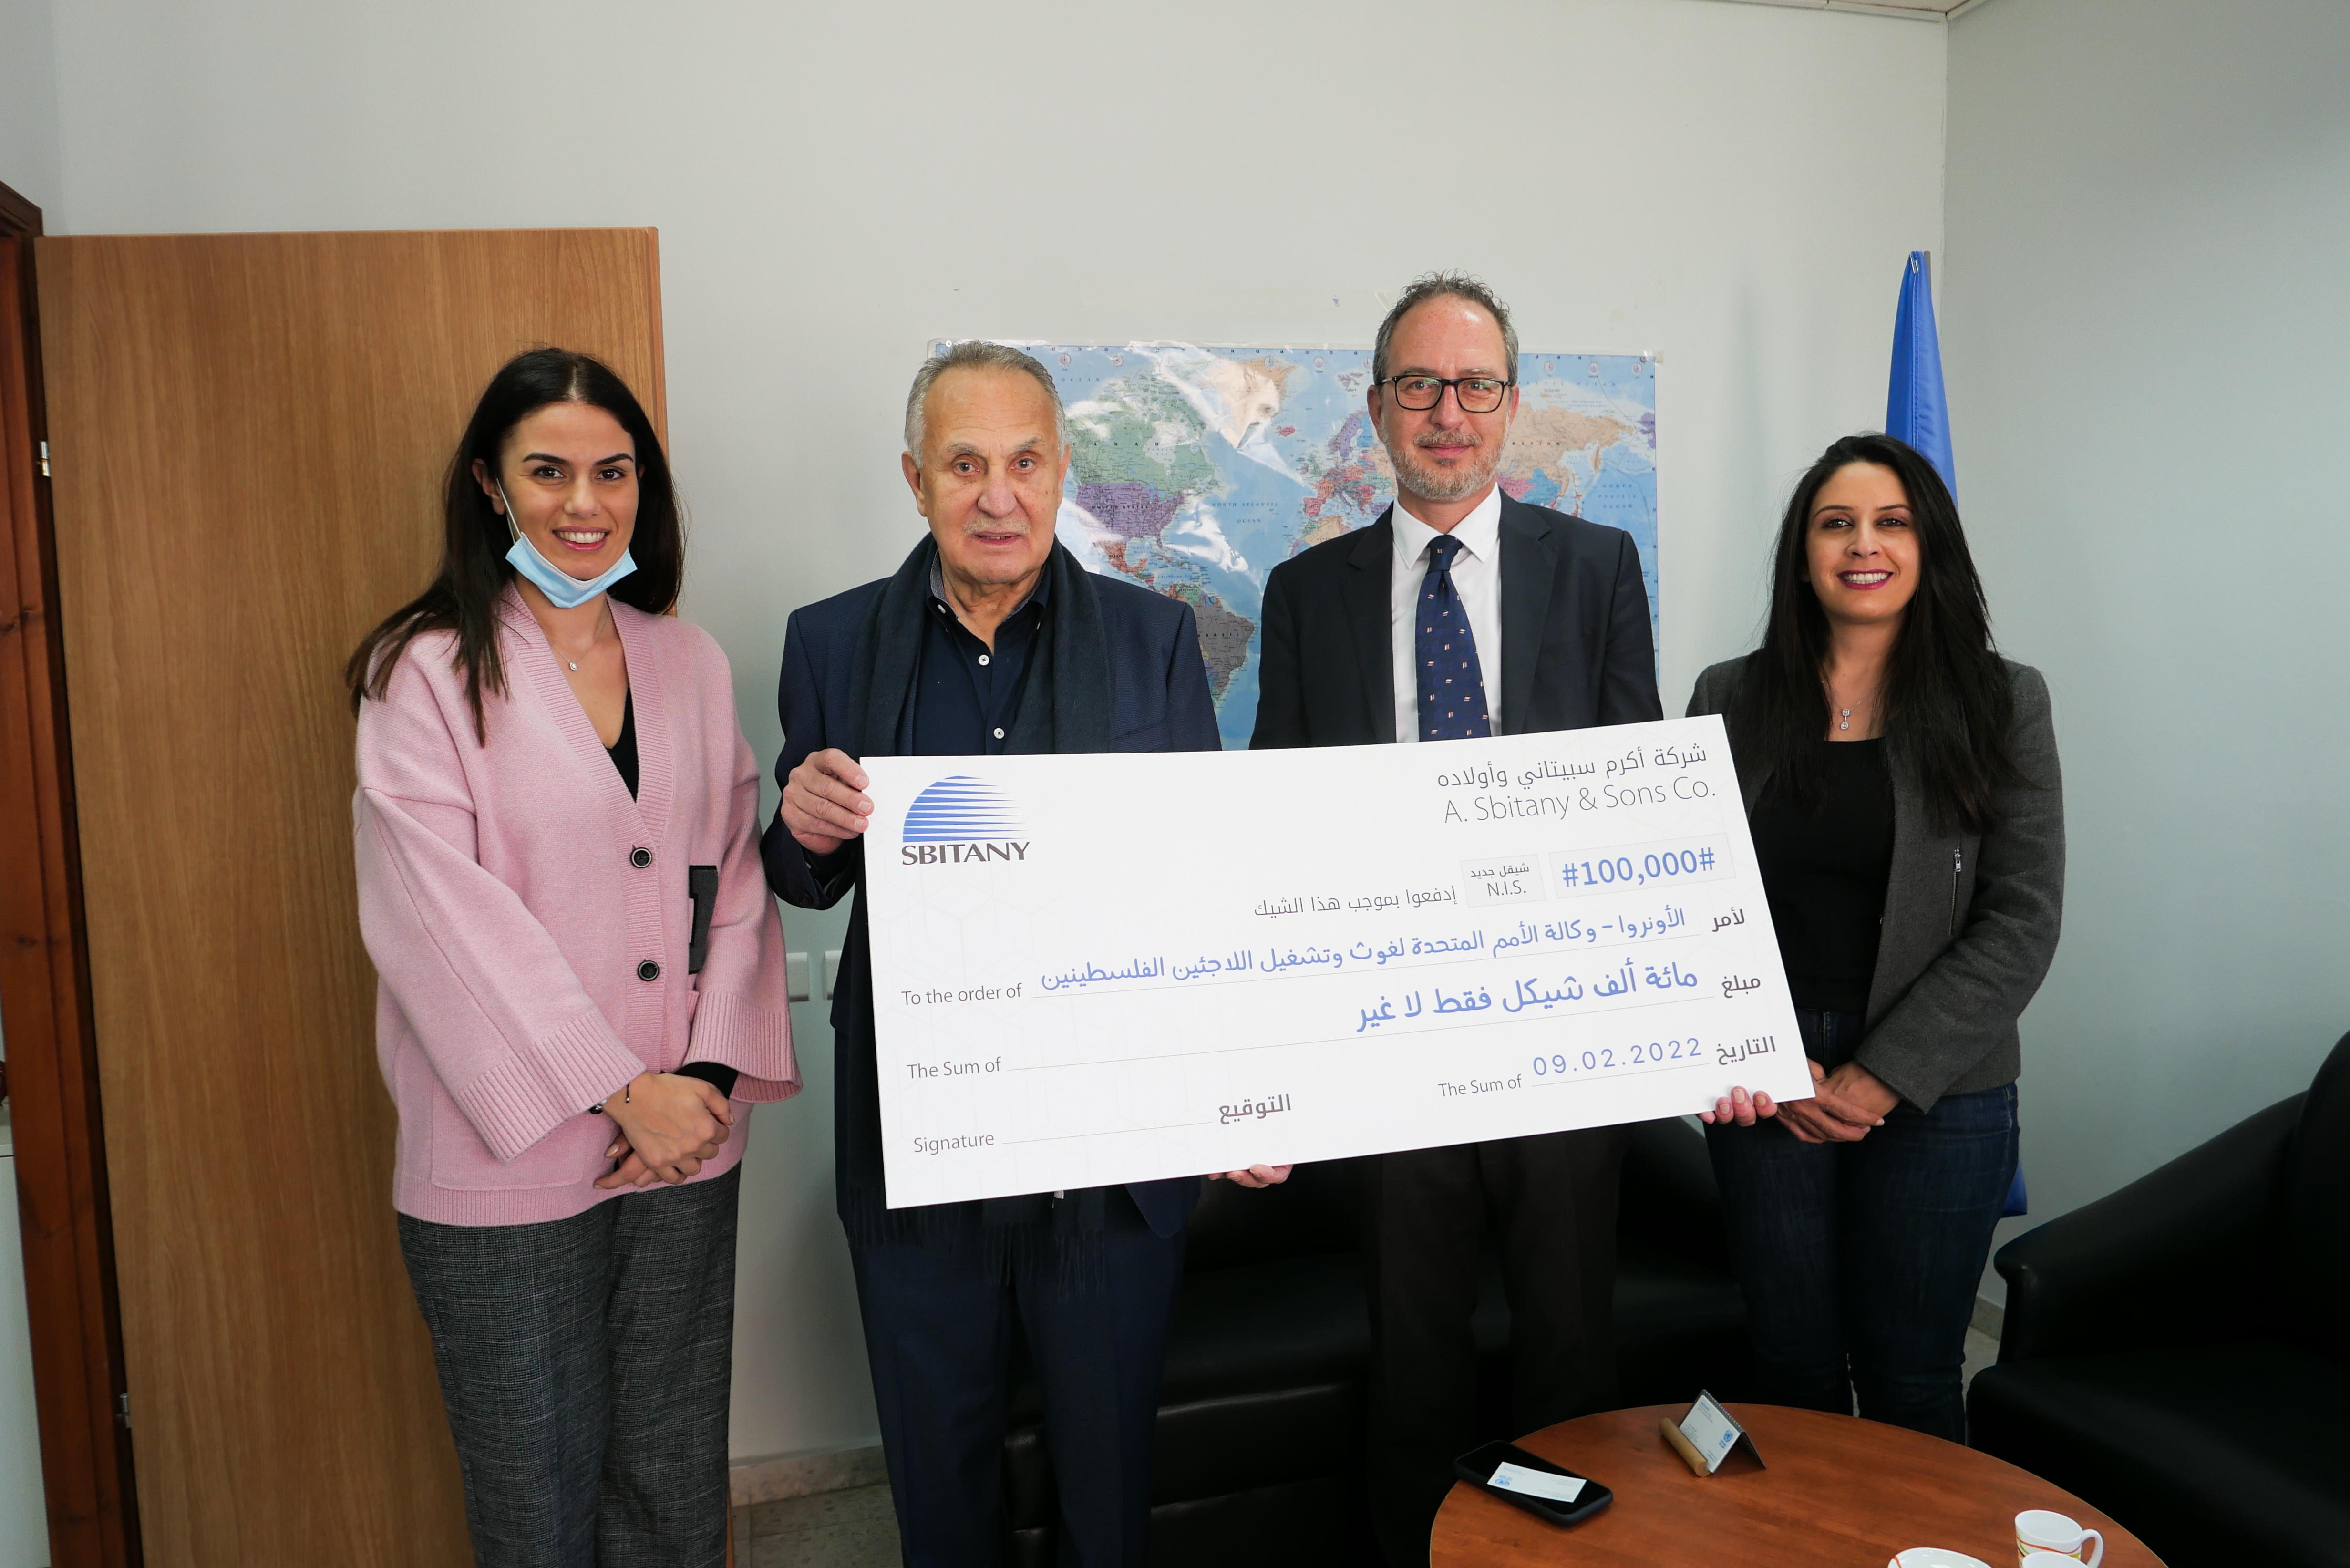 شركة سبيتاني تقدم 100 الف شيقل للاونروا لدعم برامج للصحة النفسية  في غزة